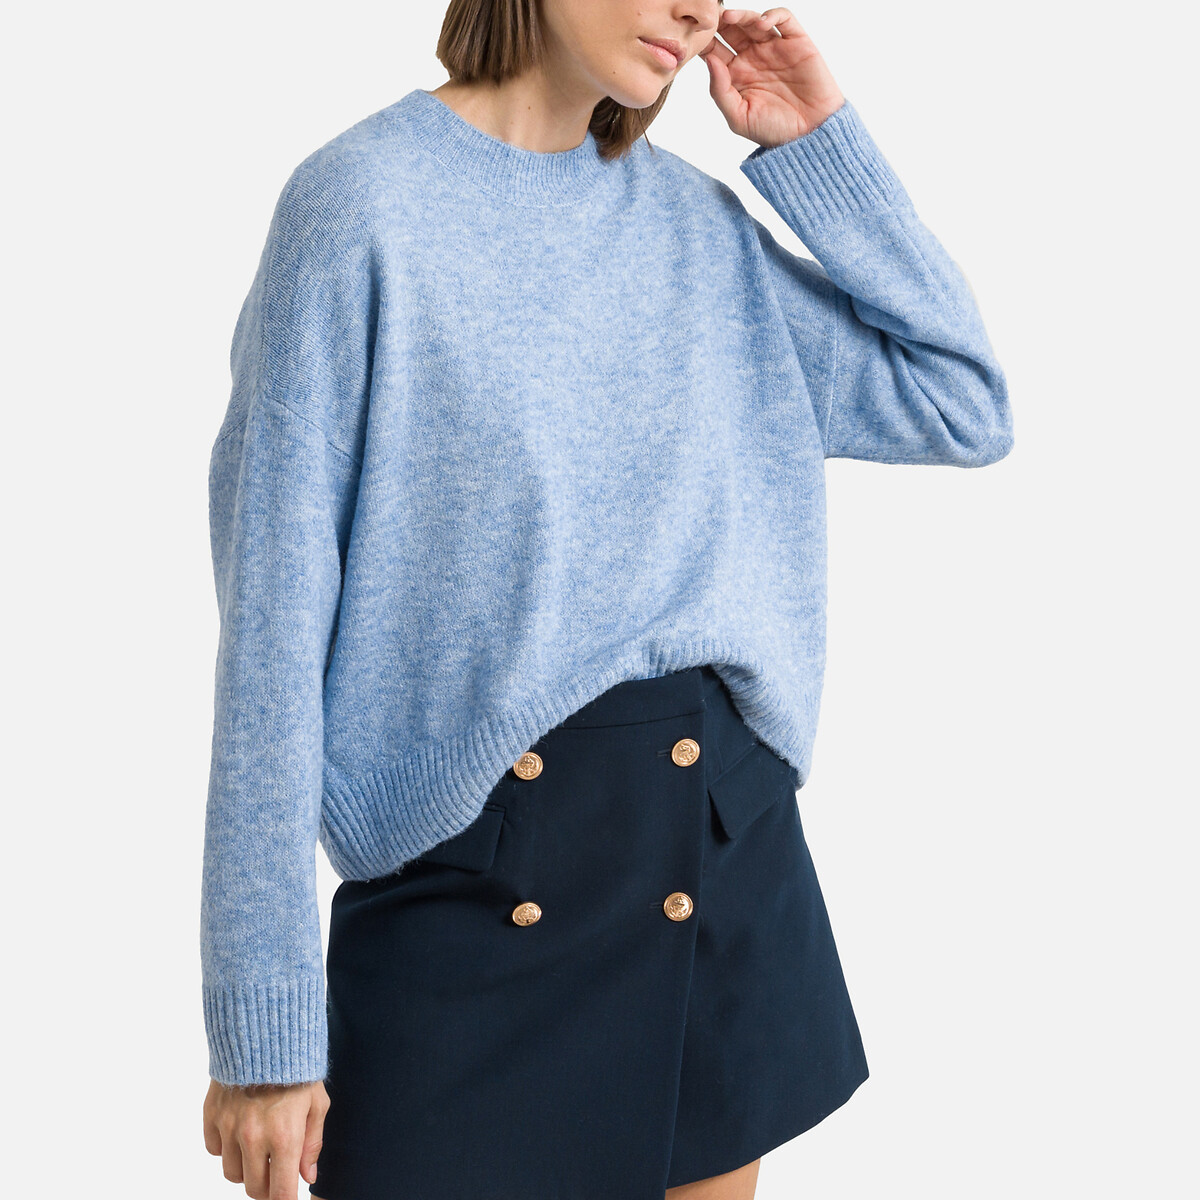 Пуловер Короткий из пышного трикотажа XL синий LaRedoute, размер XL - фото 1